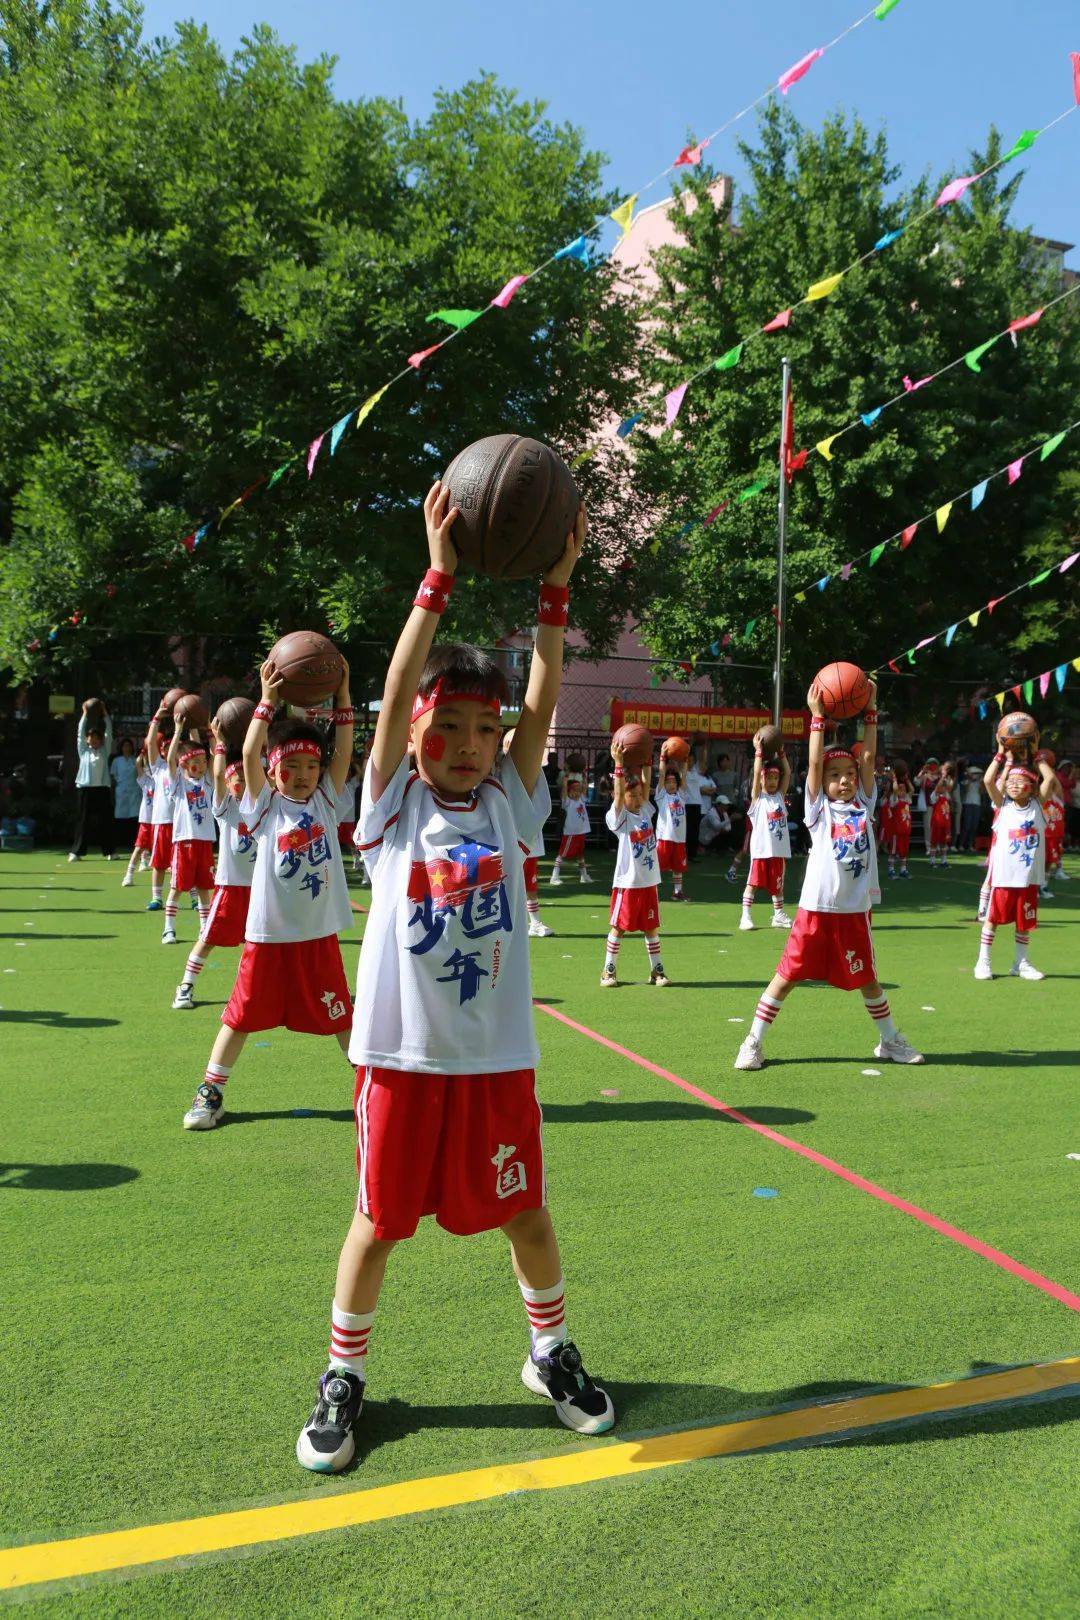 sports大一班篮球操展示让我们先来欣赏大班幼儿带来的篮球操展示吧!